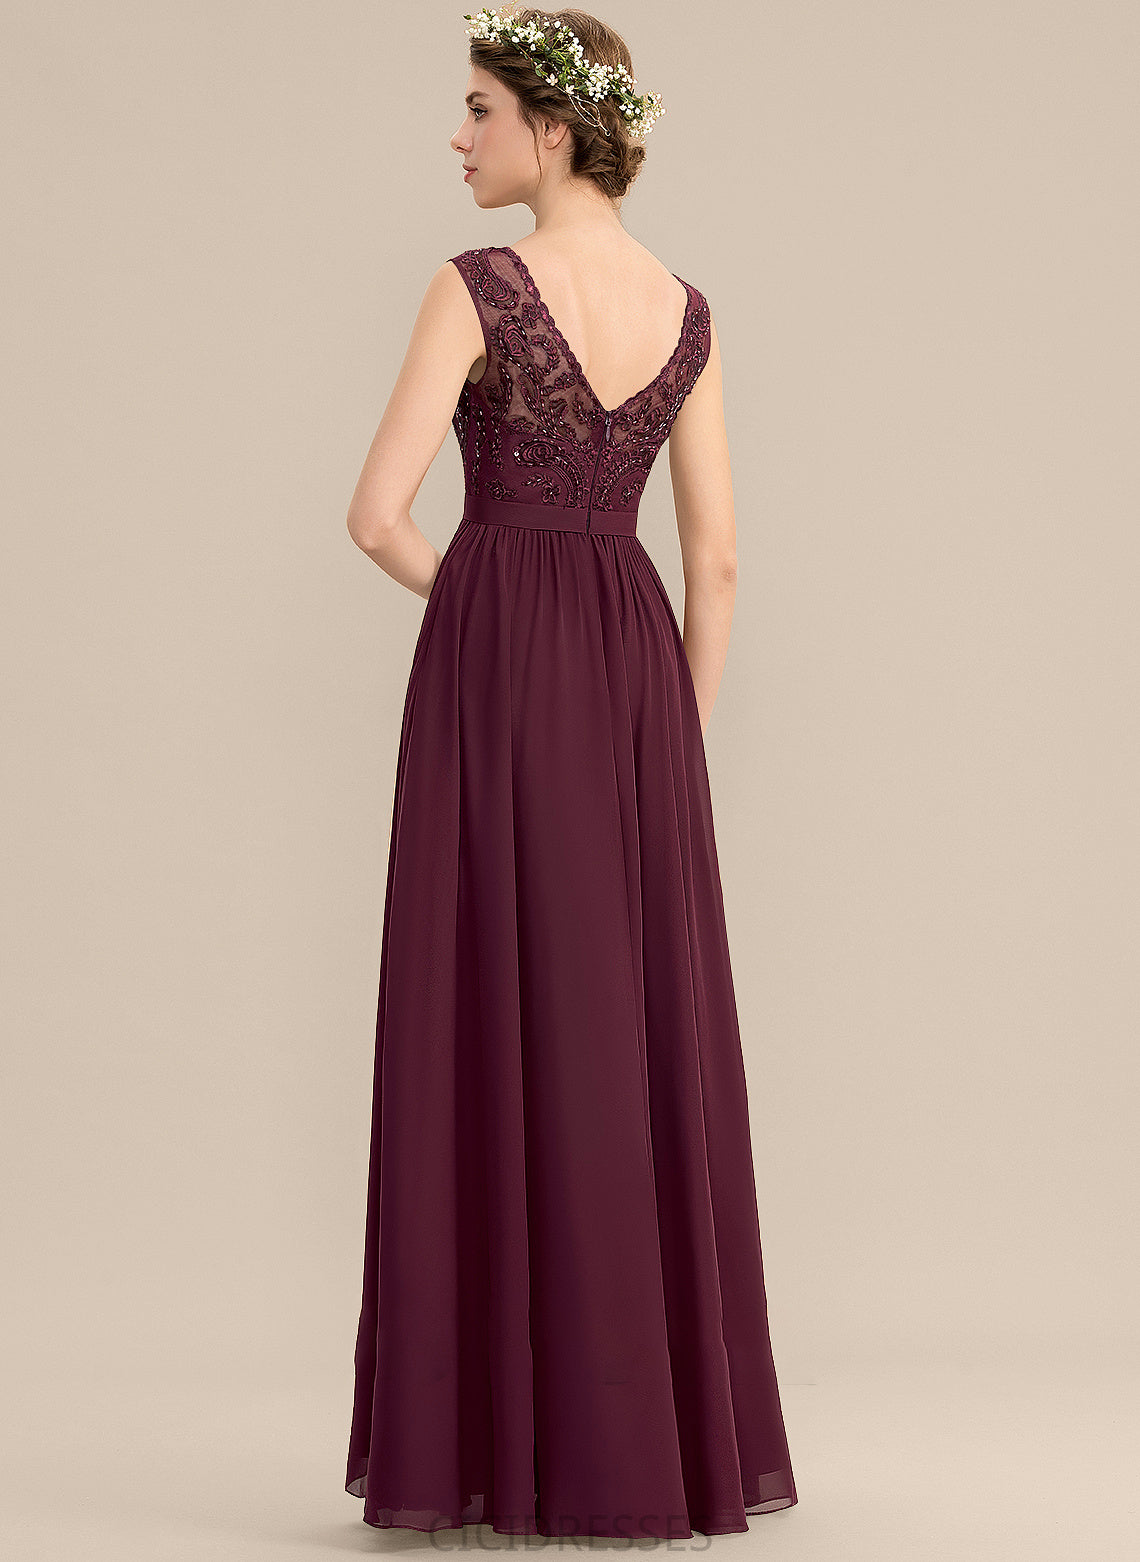 Silhouette A-Line V-neck Floor-Length SplitFront Length Neckline Pockets Embellishment Fabric Sequins Beading Bridesmaid Dresses